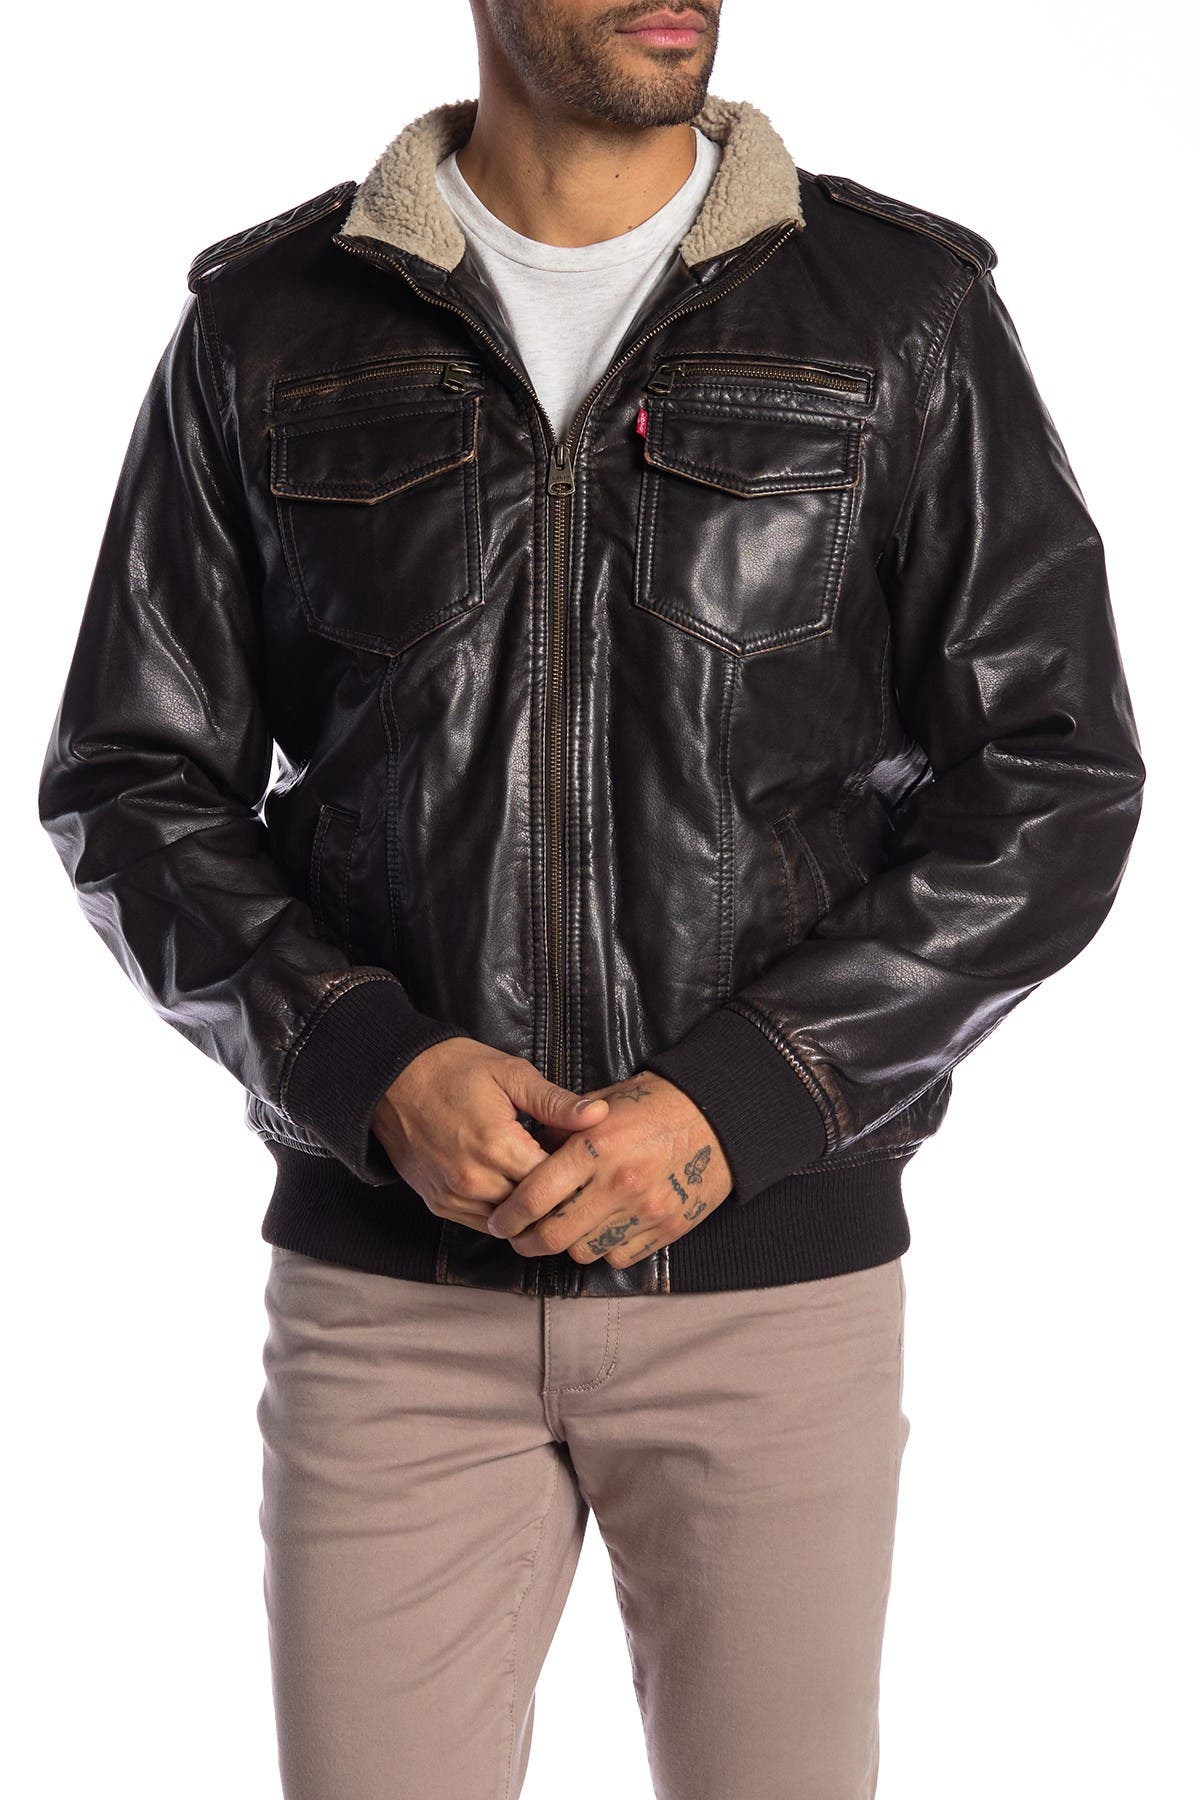 levi's leather bomber jacket